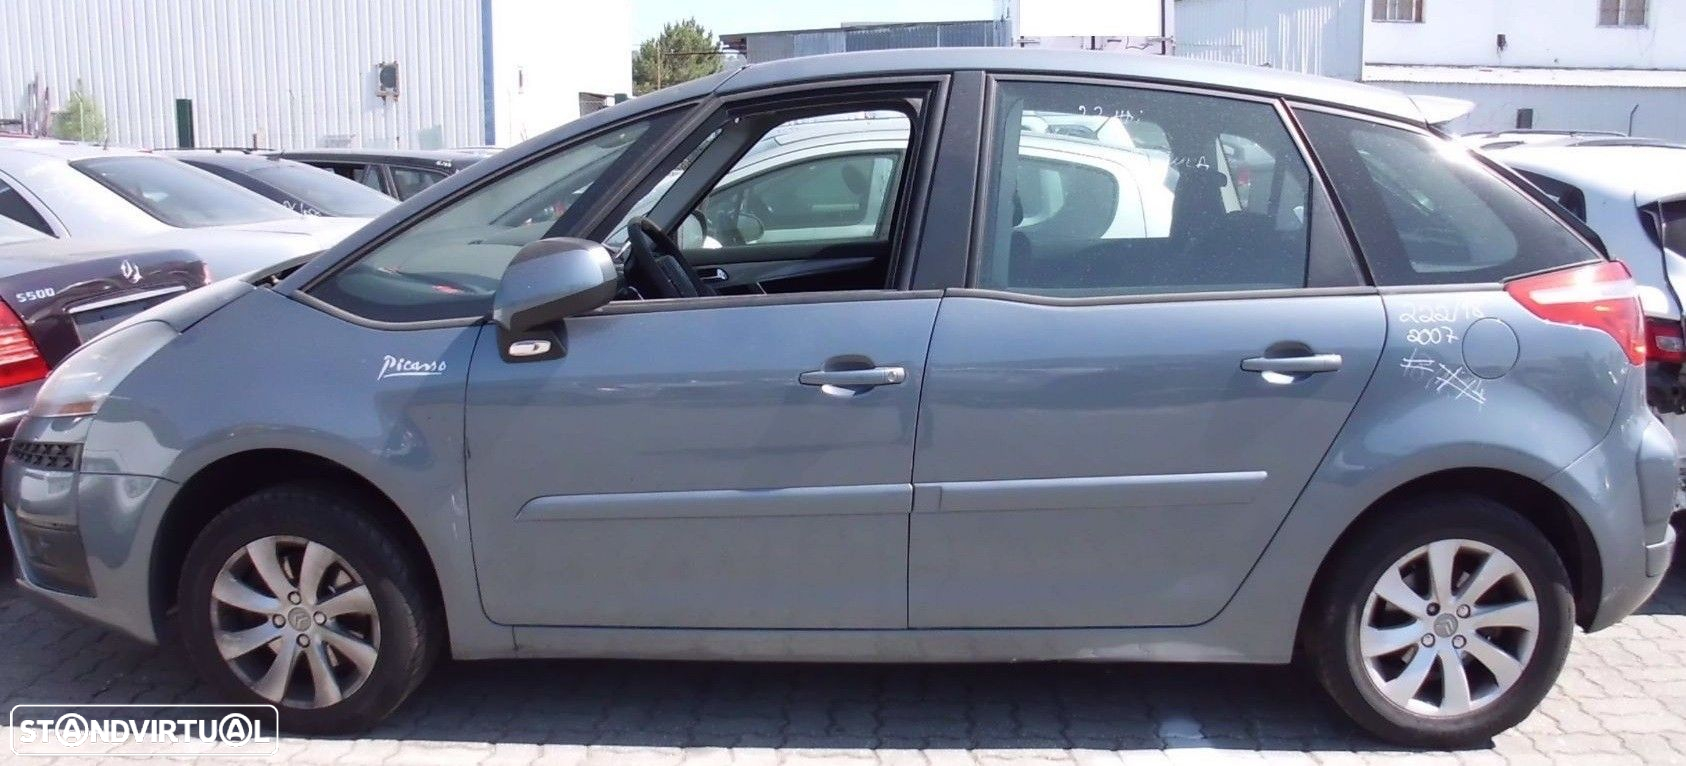 Peças  Citroën C4 Picasso I 2006 a 2013 - 8